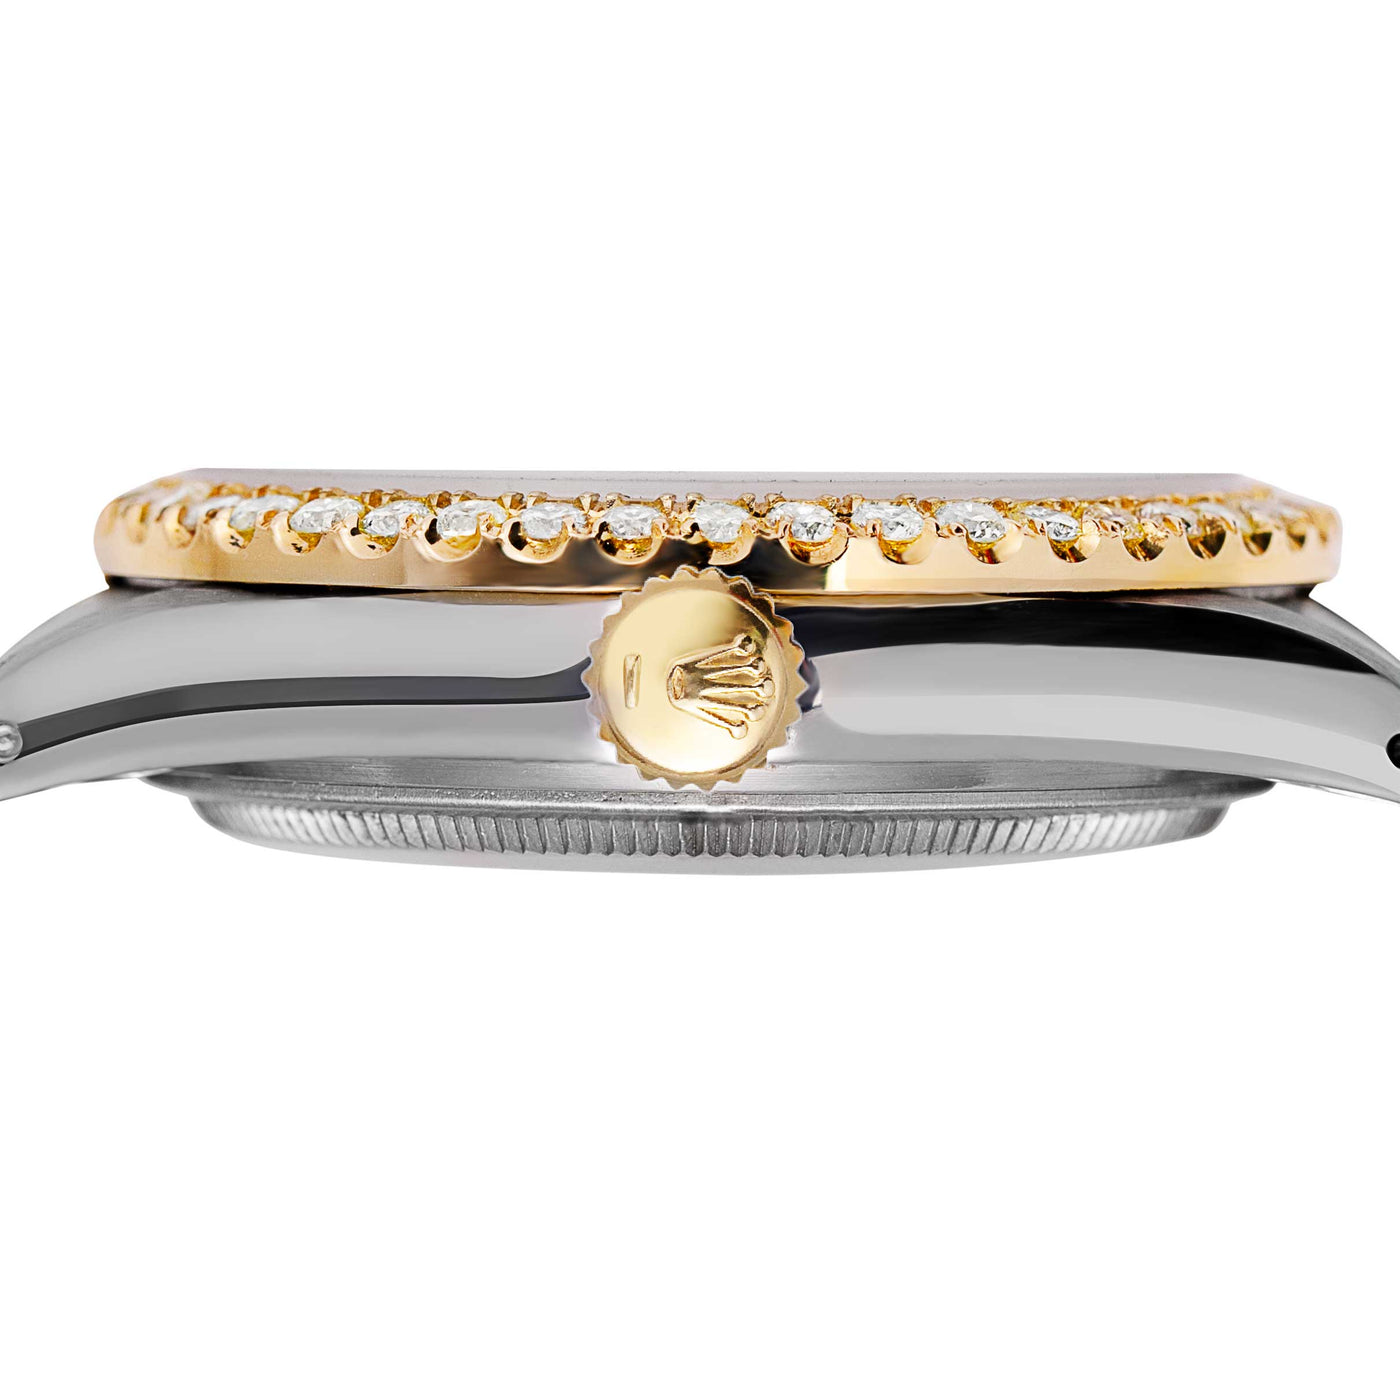 Women Rolex Datejust Diamond Bezel Watch 26mm Green Dial | 1.25ct